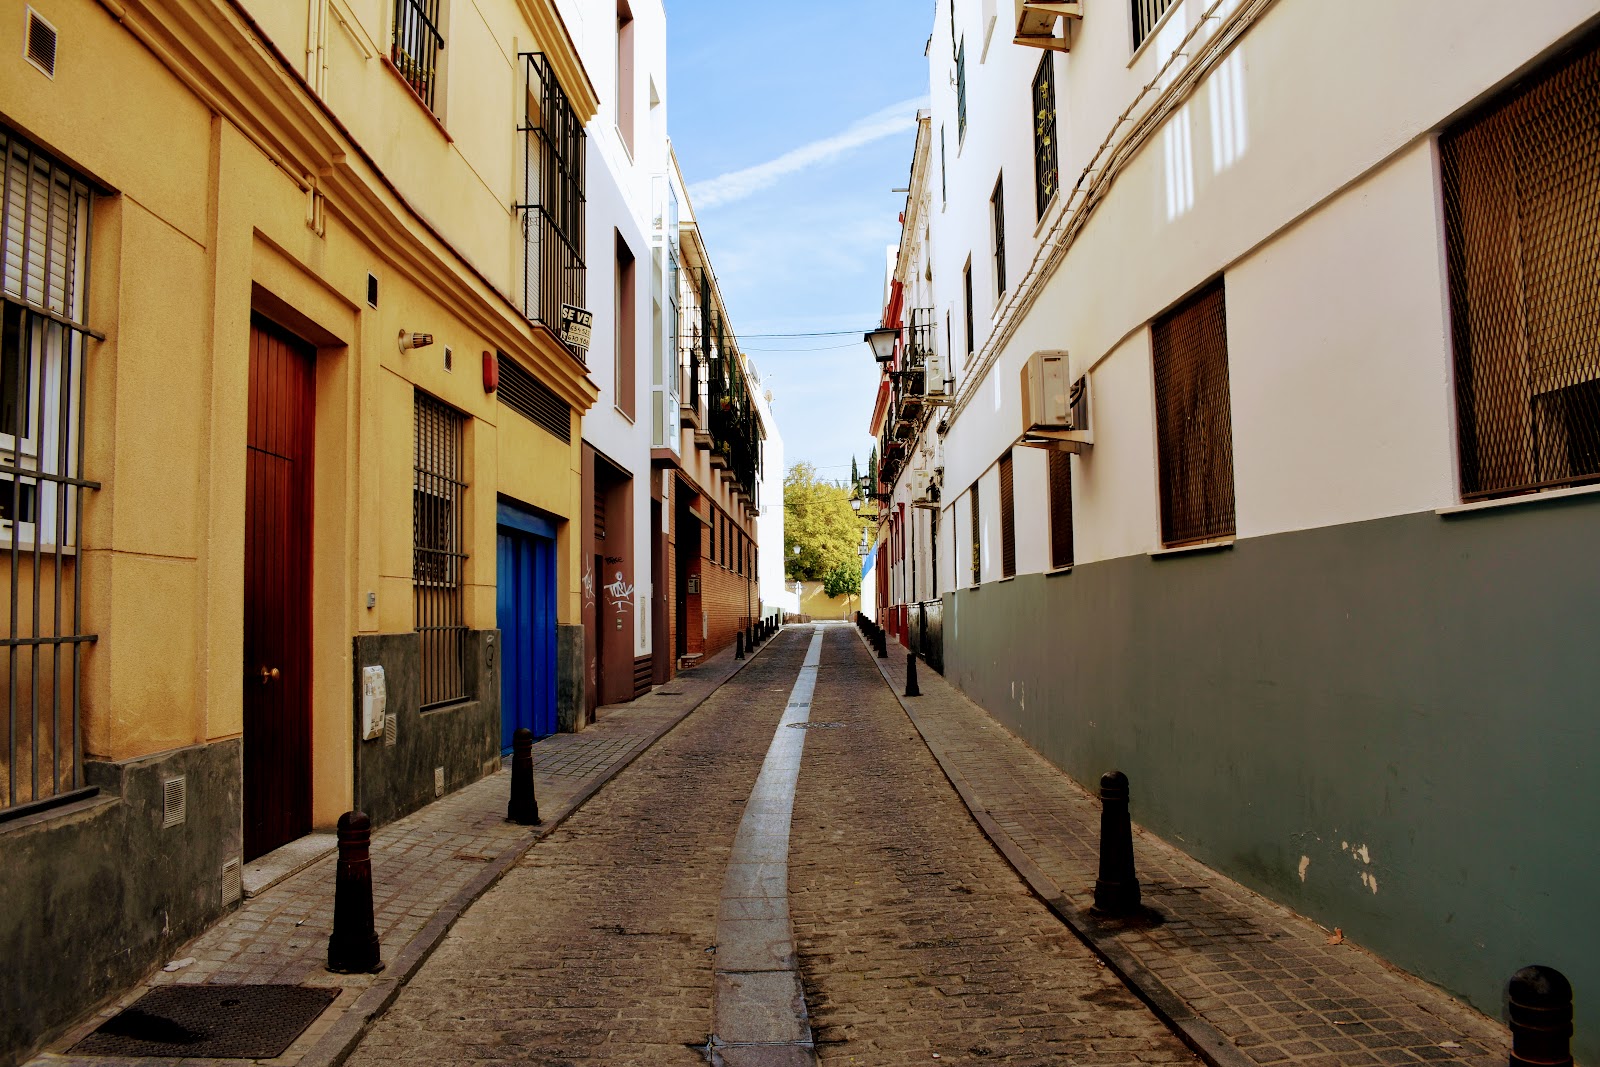 Calle angosta en Sevilla